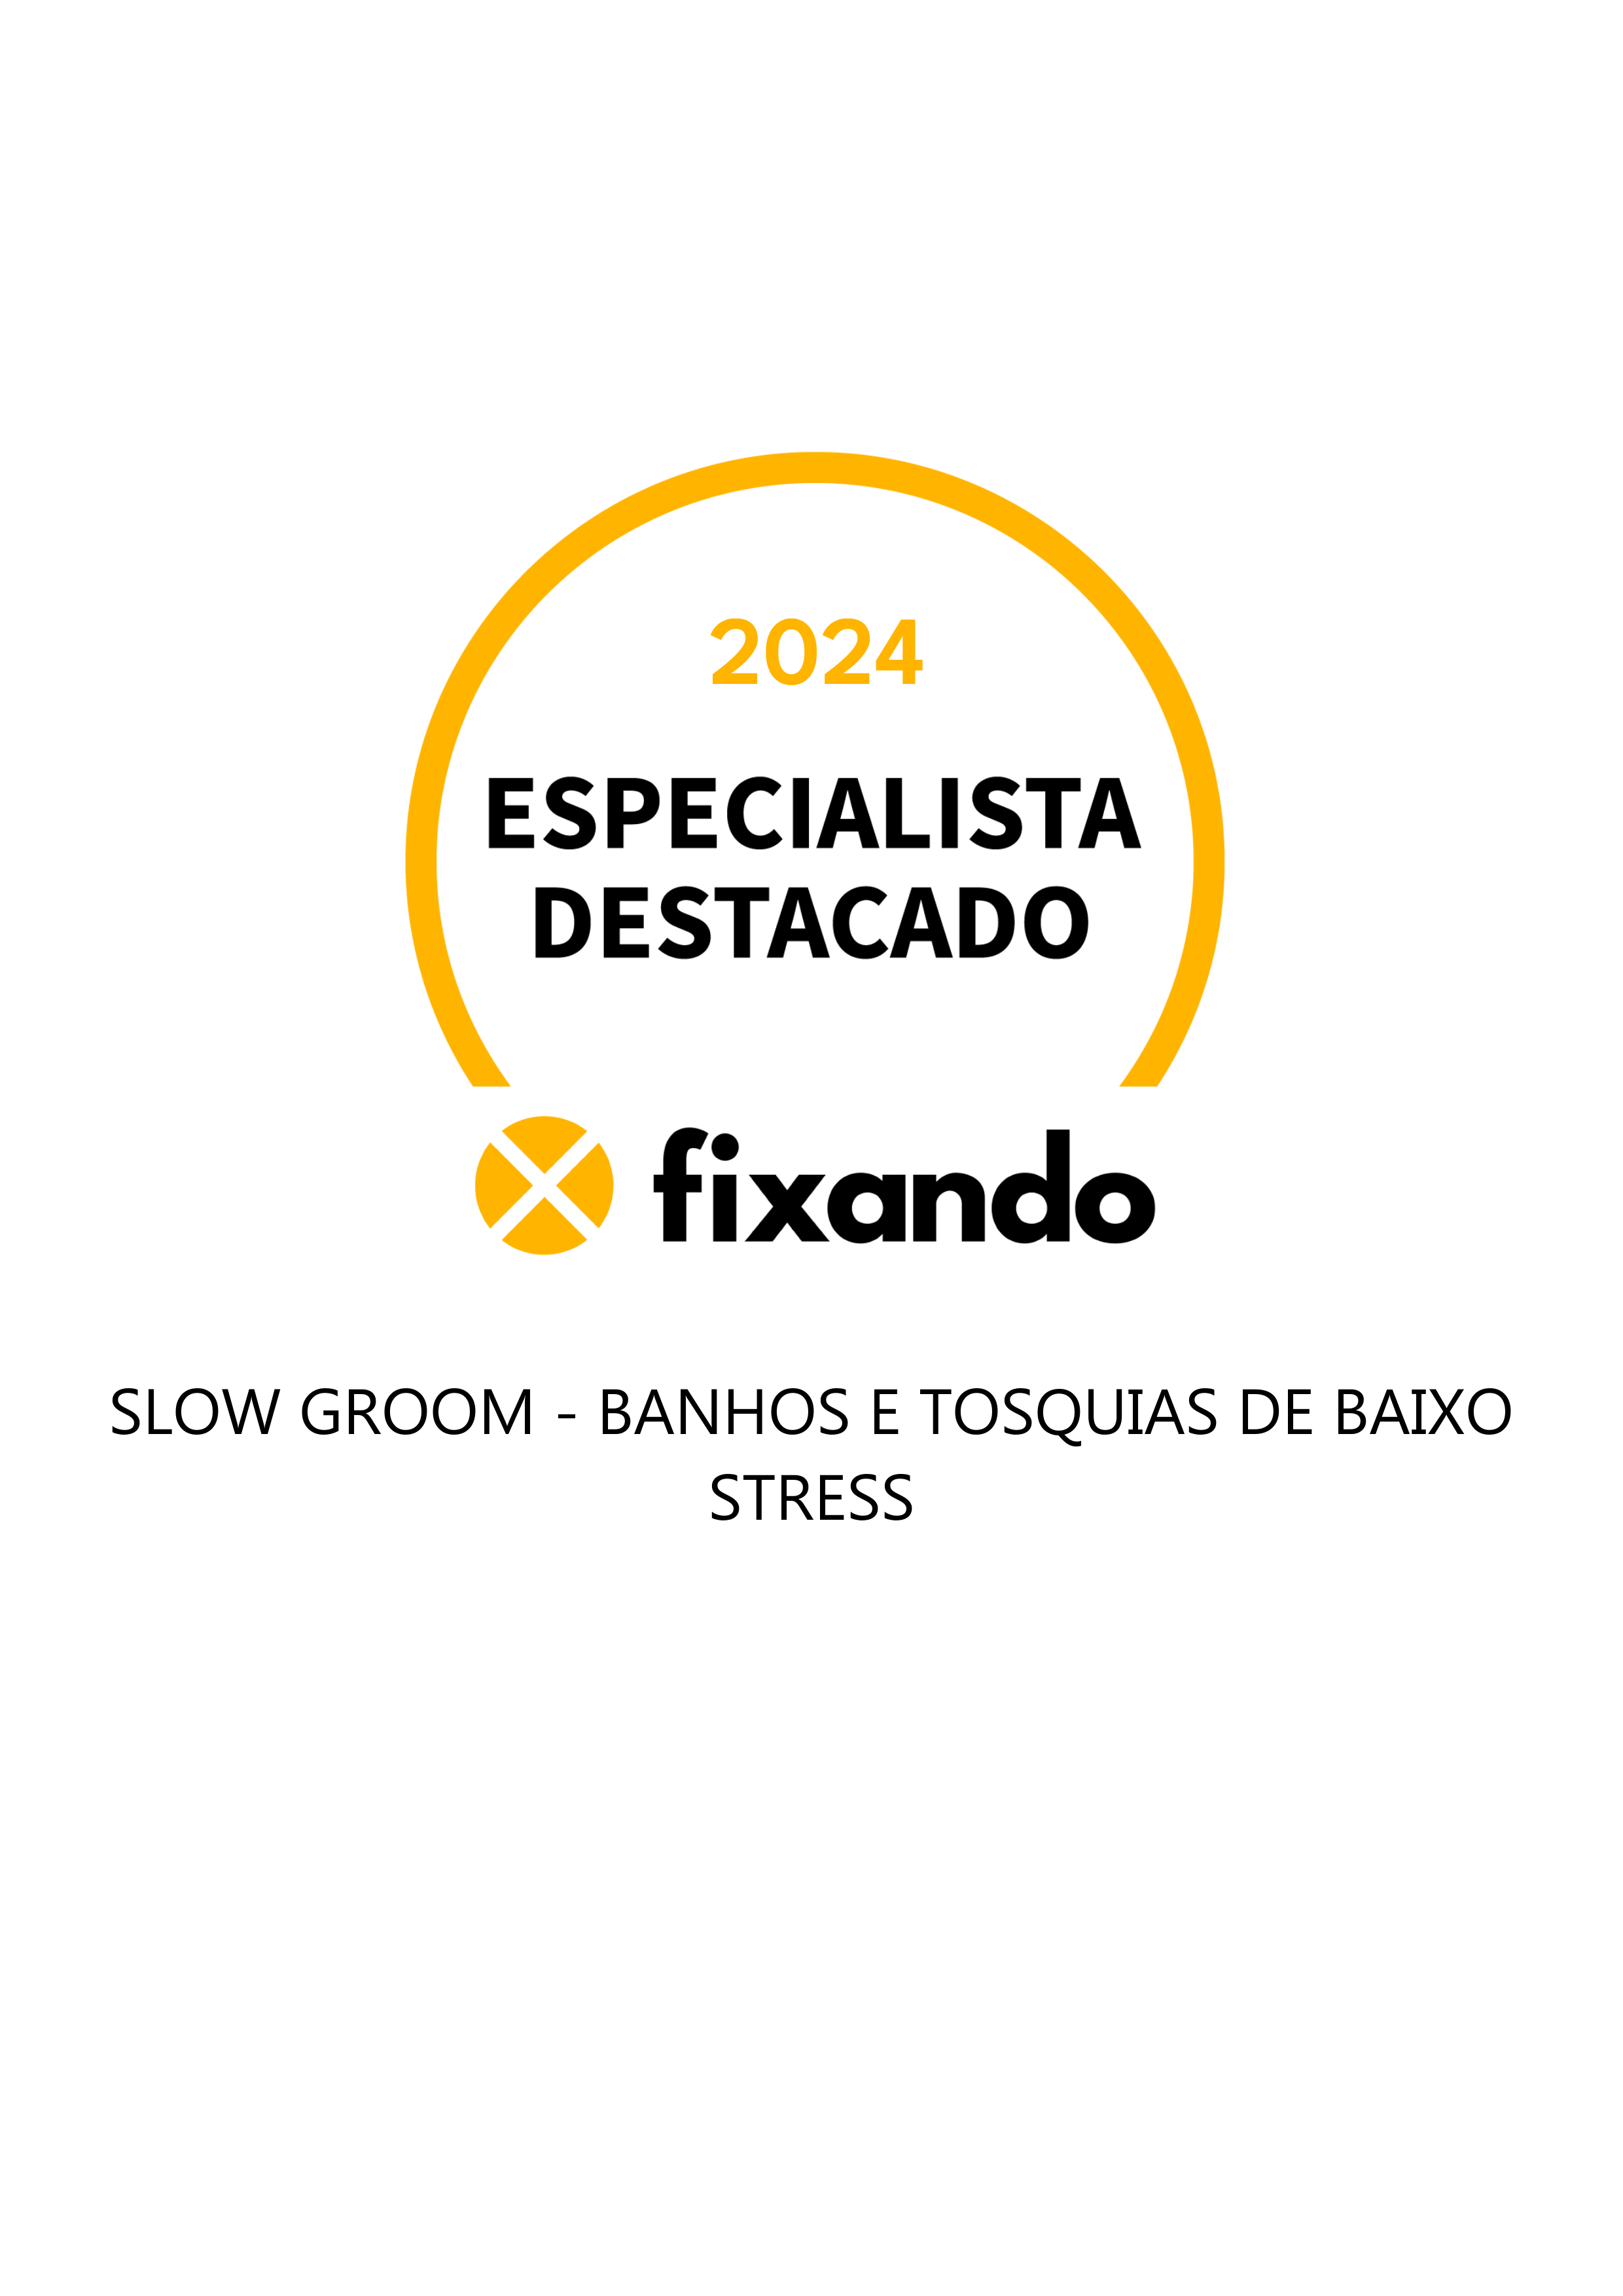 Slow Groom - banhos e tosquias de baixo stress - Lisboa - Banhos e Tosquias para Animais